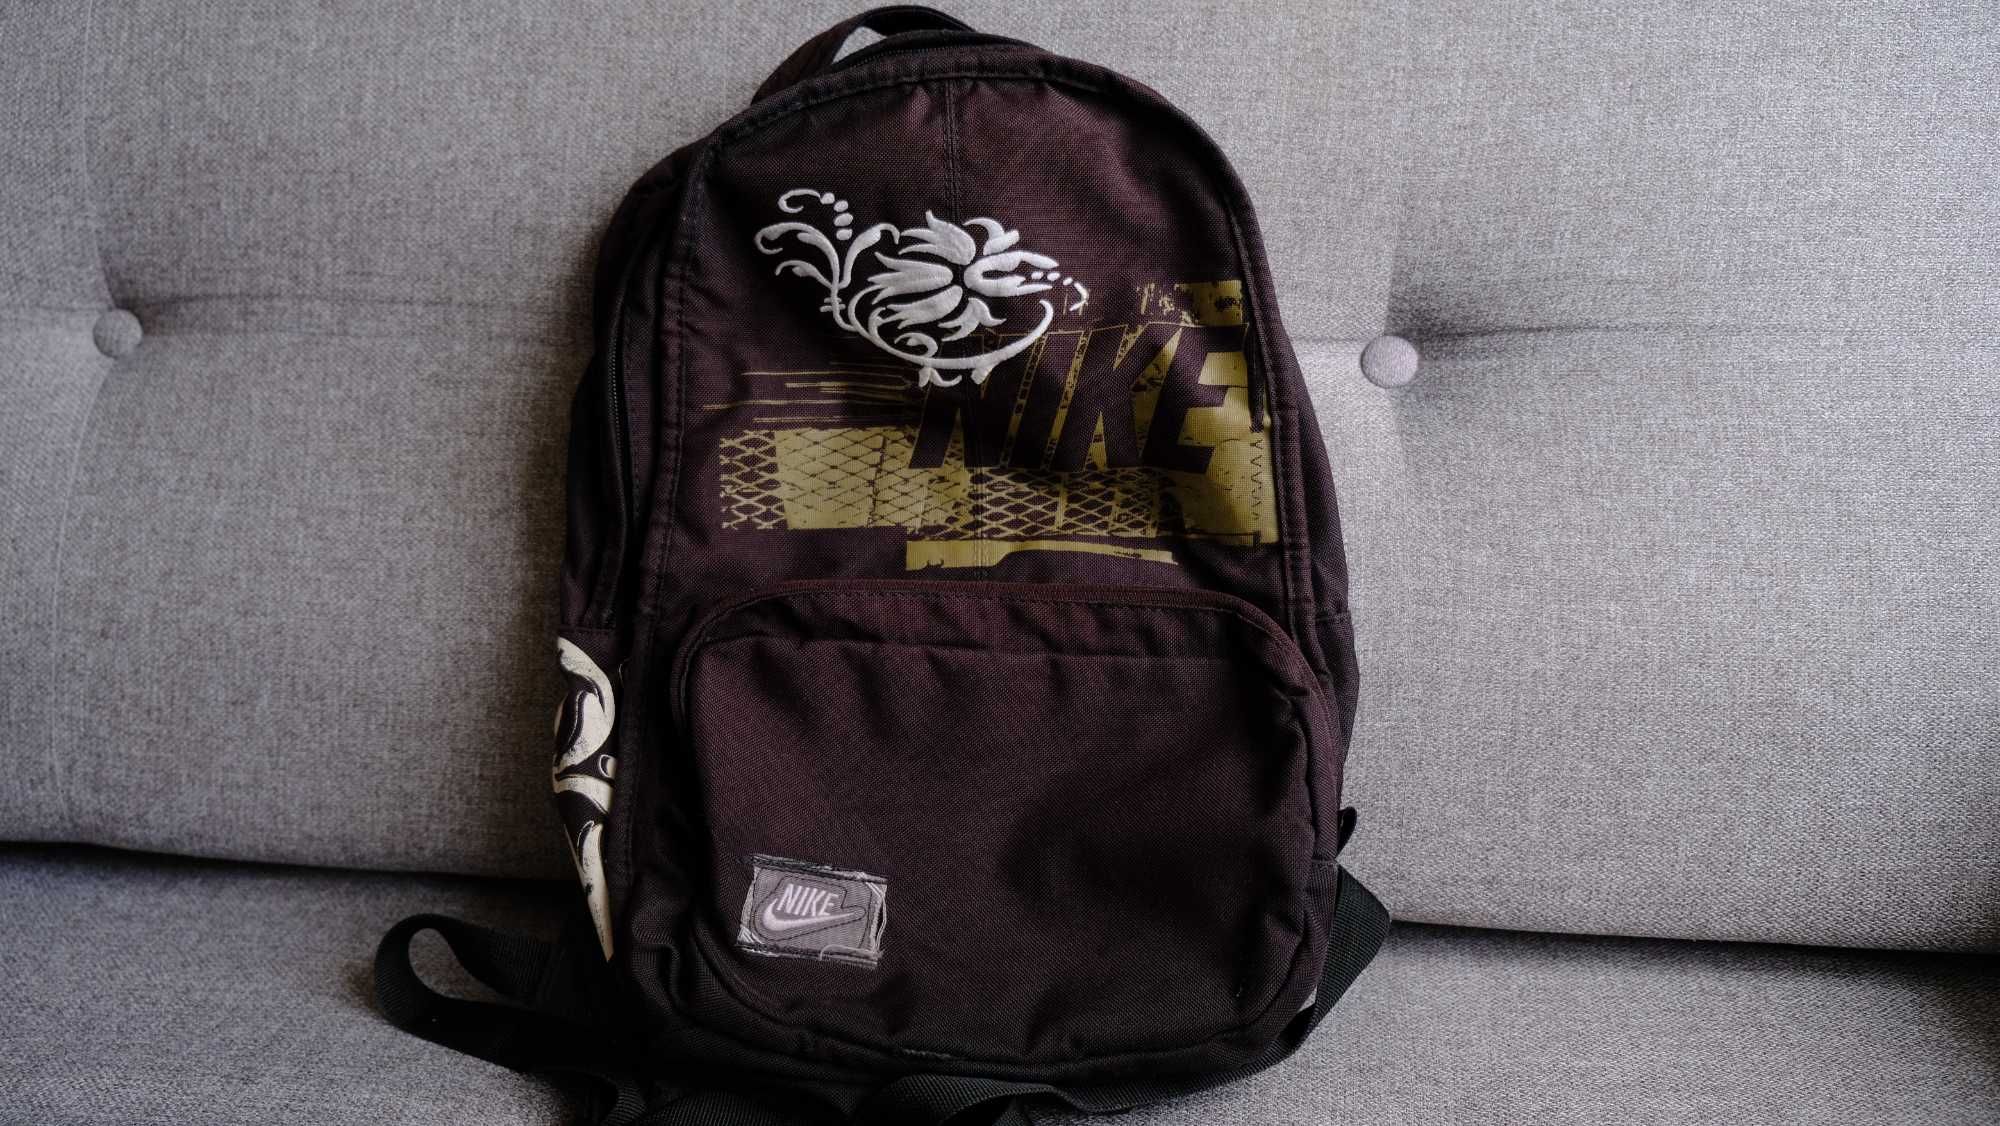 Plecak Nike dla chłopca/dziewczynki, szkoła/wycieczka